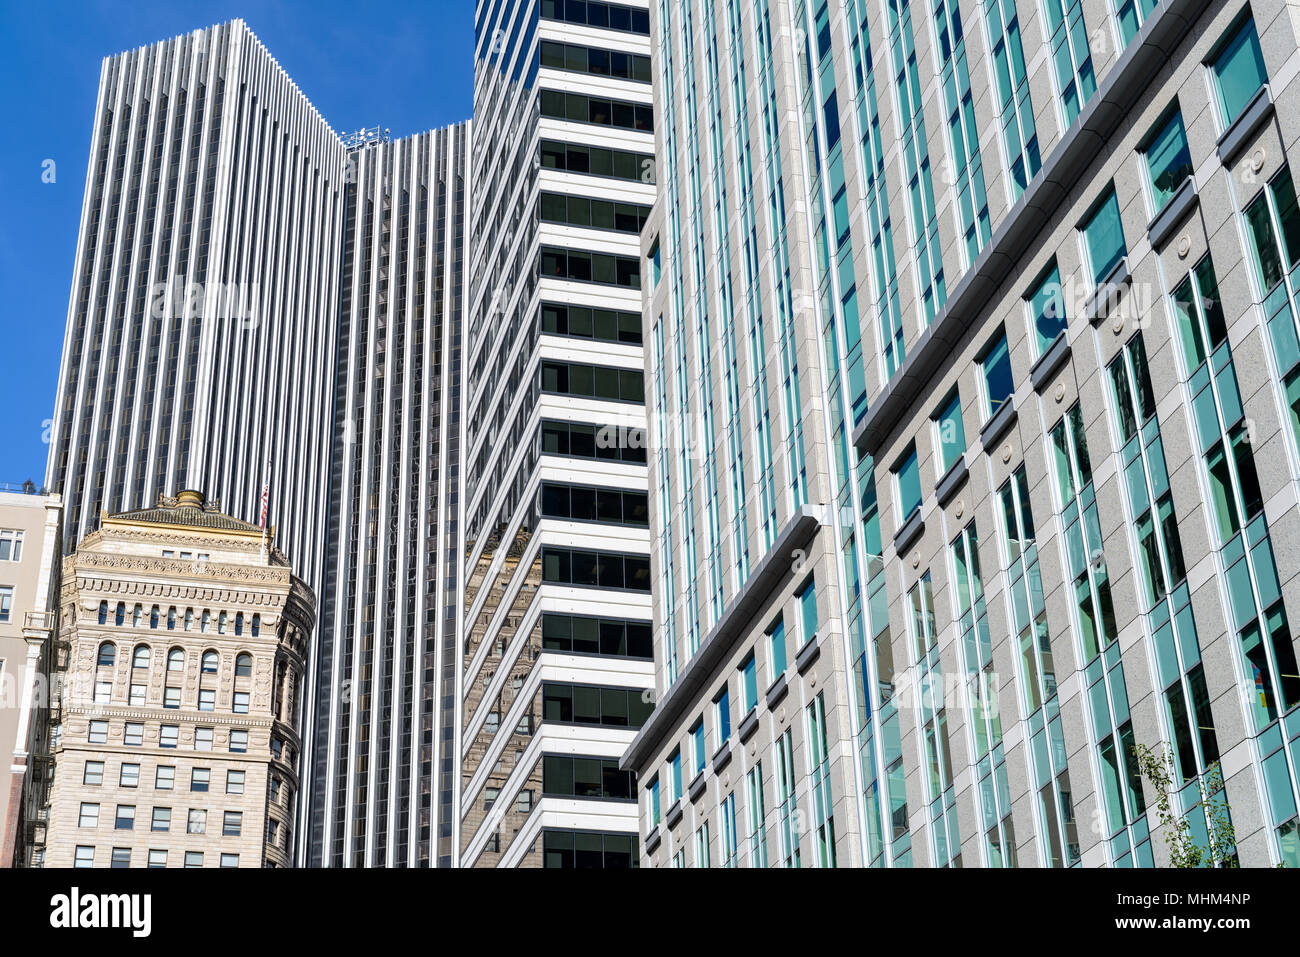 La ville moderne - une vue rapprochée des gratte-ciel dans le quartier financier de San Francisco, Californie, USA. Banque D'Images